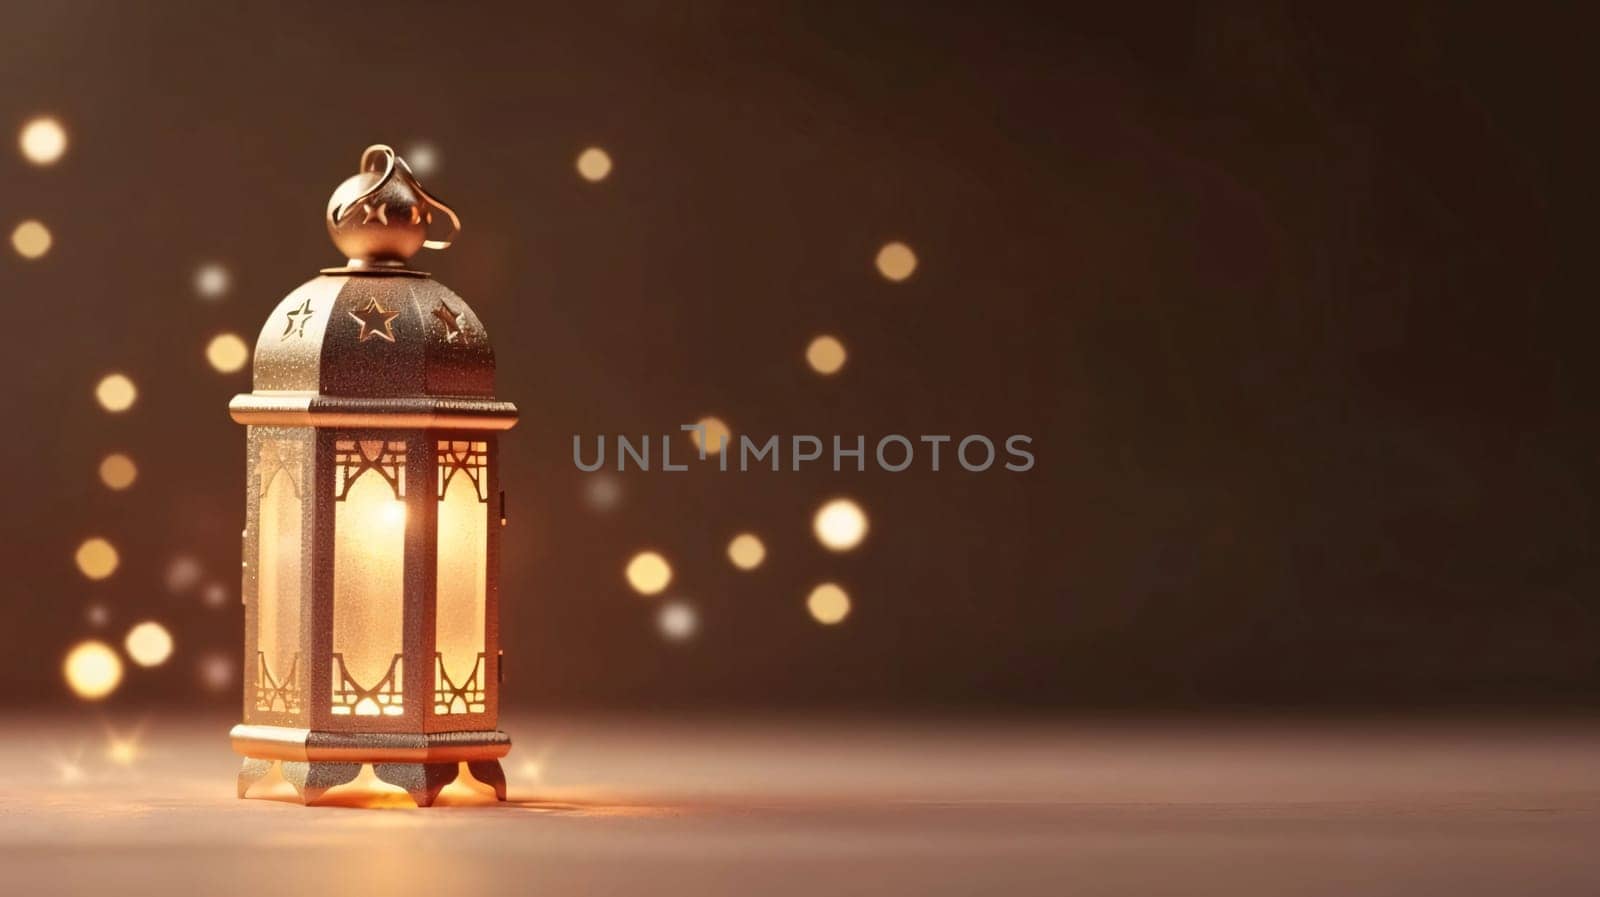 Banner: Lantern with bokeh lights. Ramadan Kareem background